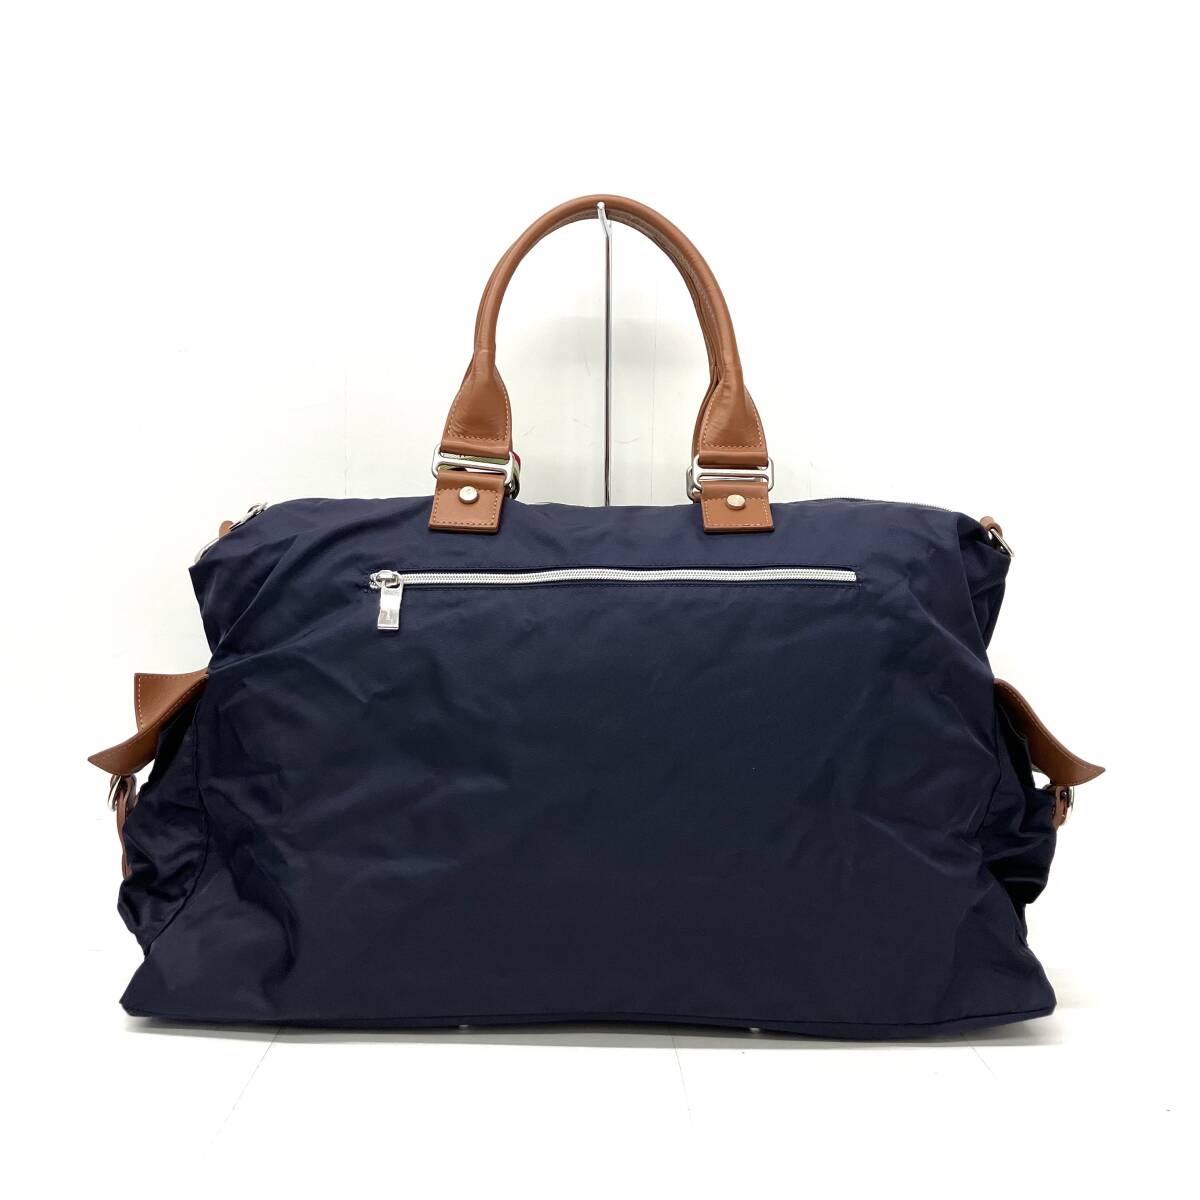 orobianco Orobianco CALIFFONA-A 2WAY сумка "Boston bag" сумка на плечо большая сумка с биркой импортированный автомобиль бренд 